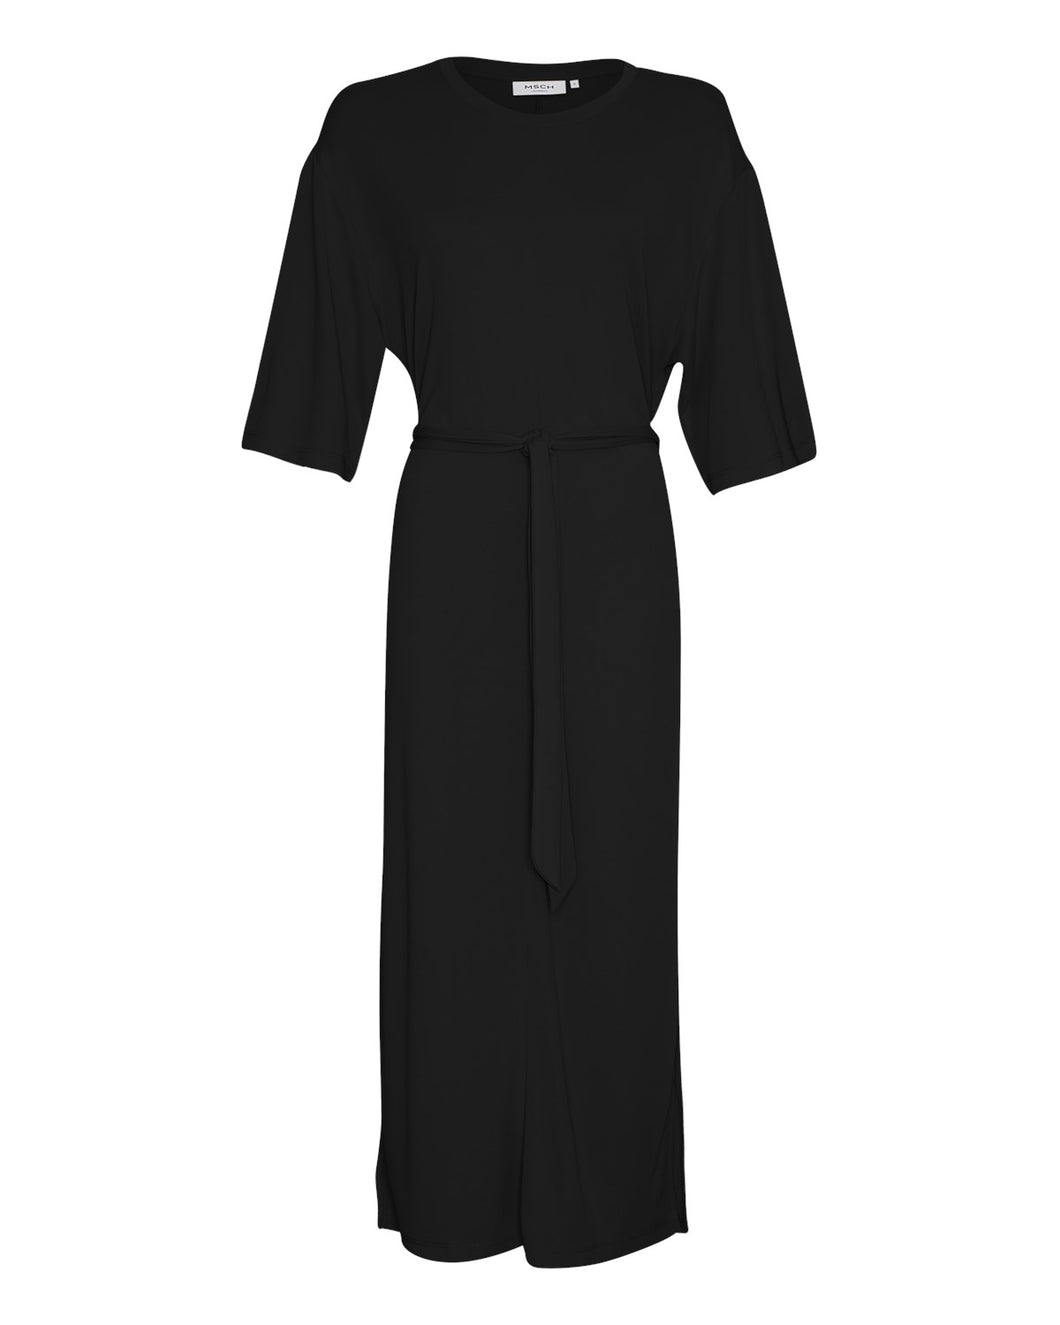 MSCHDeanie Lynette 2/4 Dress, black